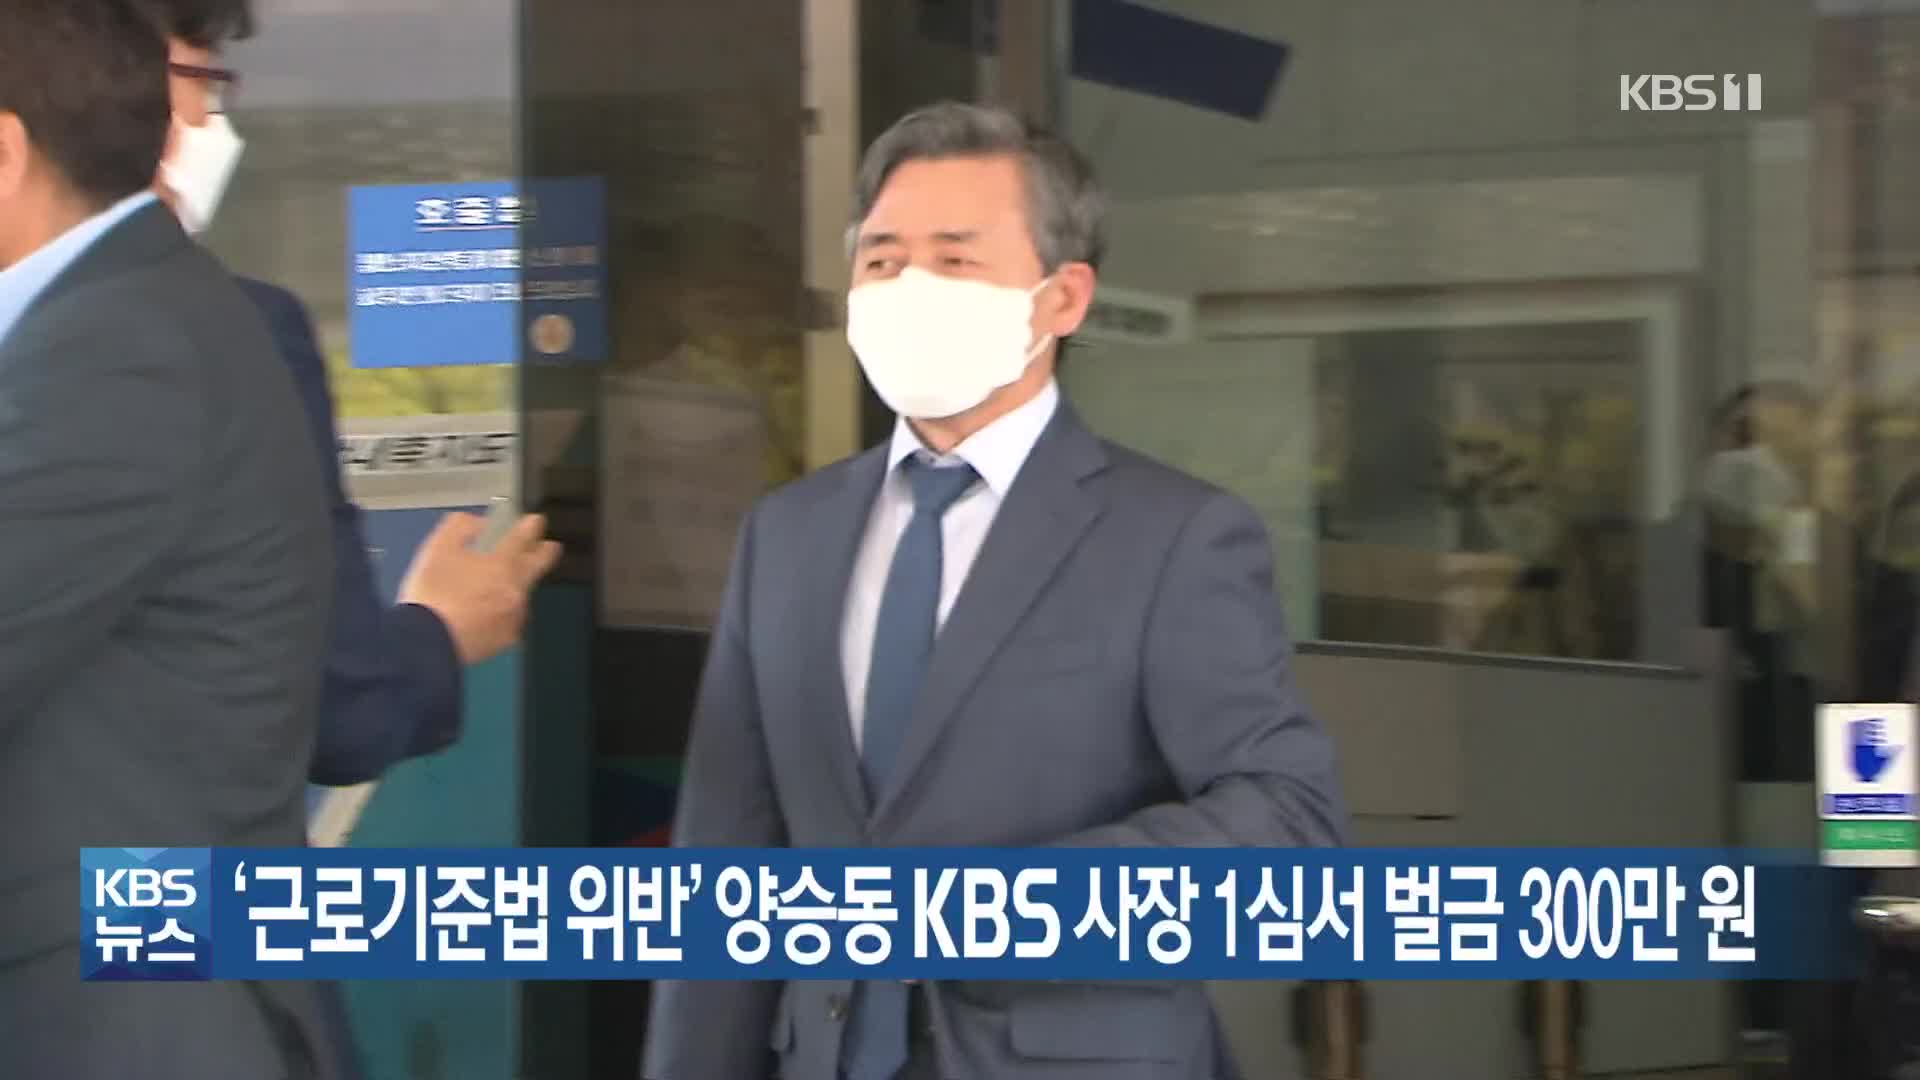 ‘근로기준법 위반’ 양승동 KBS 사장 1심서 벌금 300만 원